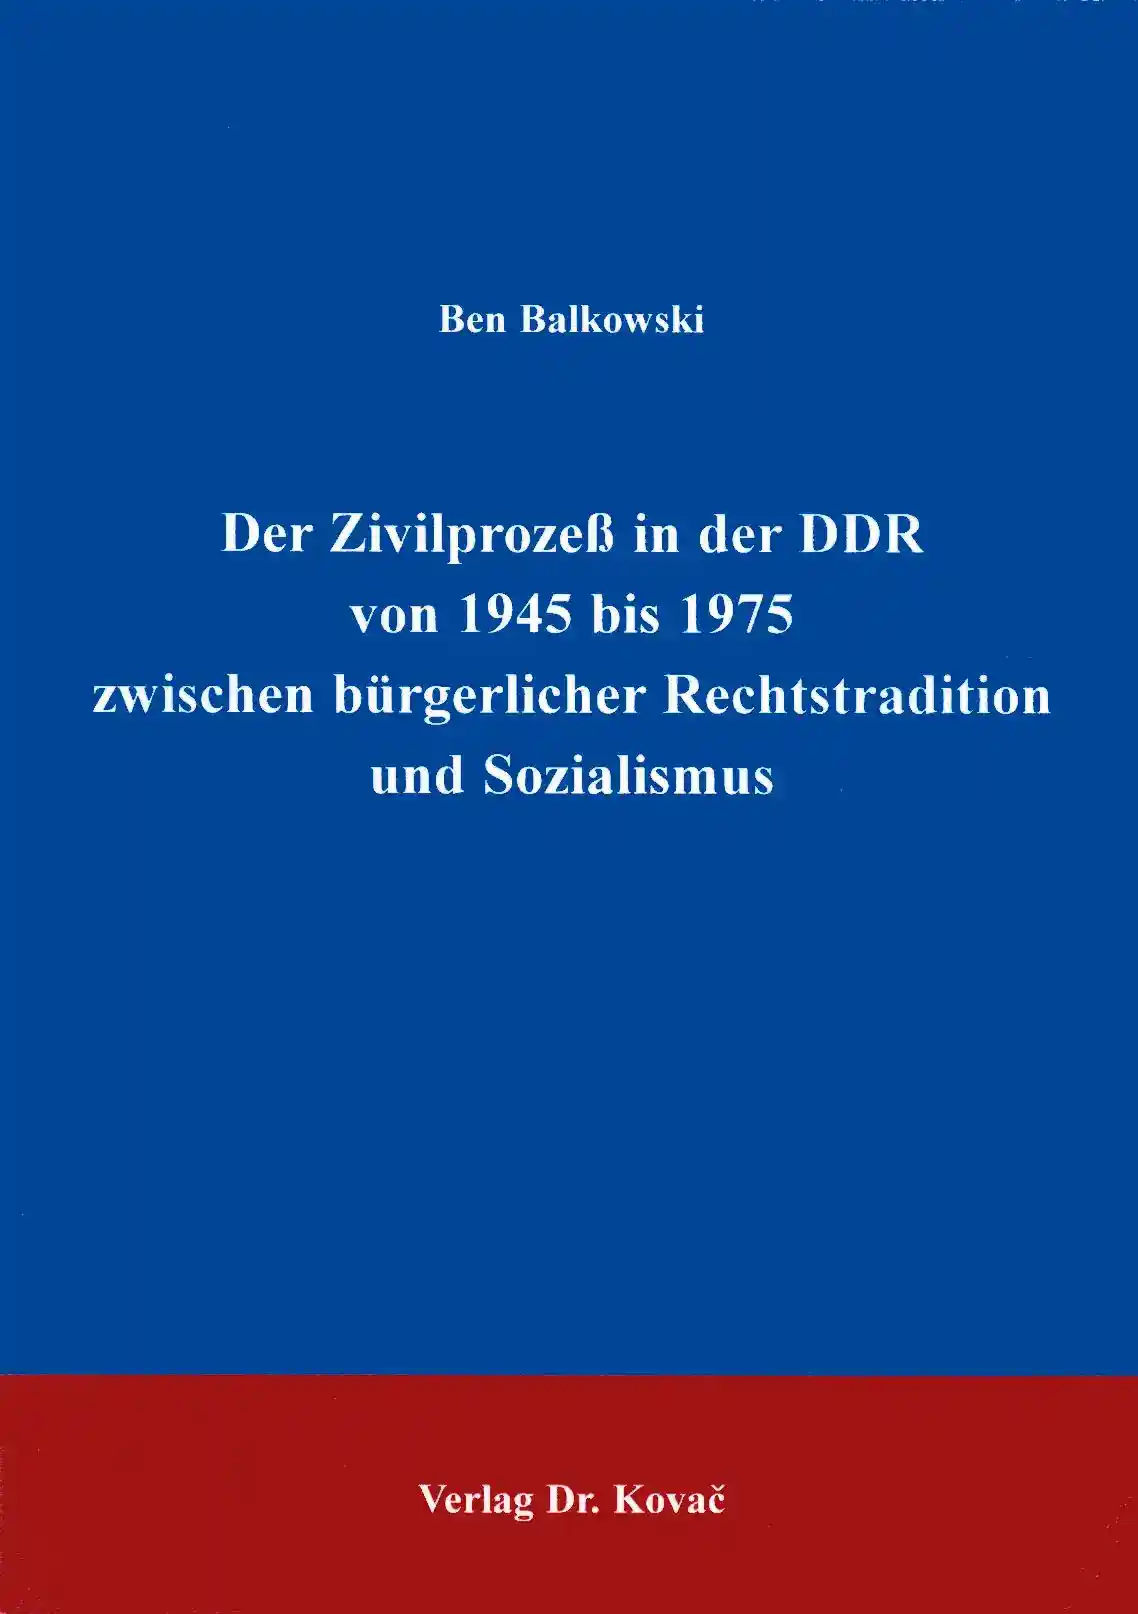 Der Zivilprozeß in der DDR von 1945 bis 1975 zwischen bürgerlicher Rechtstradition und Sozialismus (Doktorarbeit)